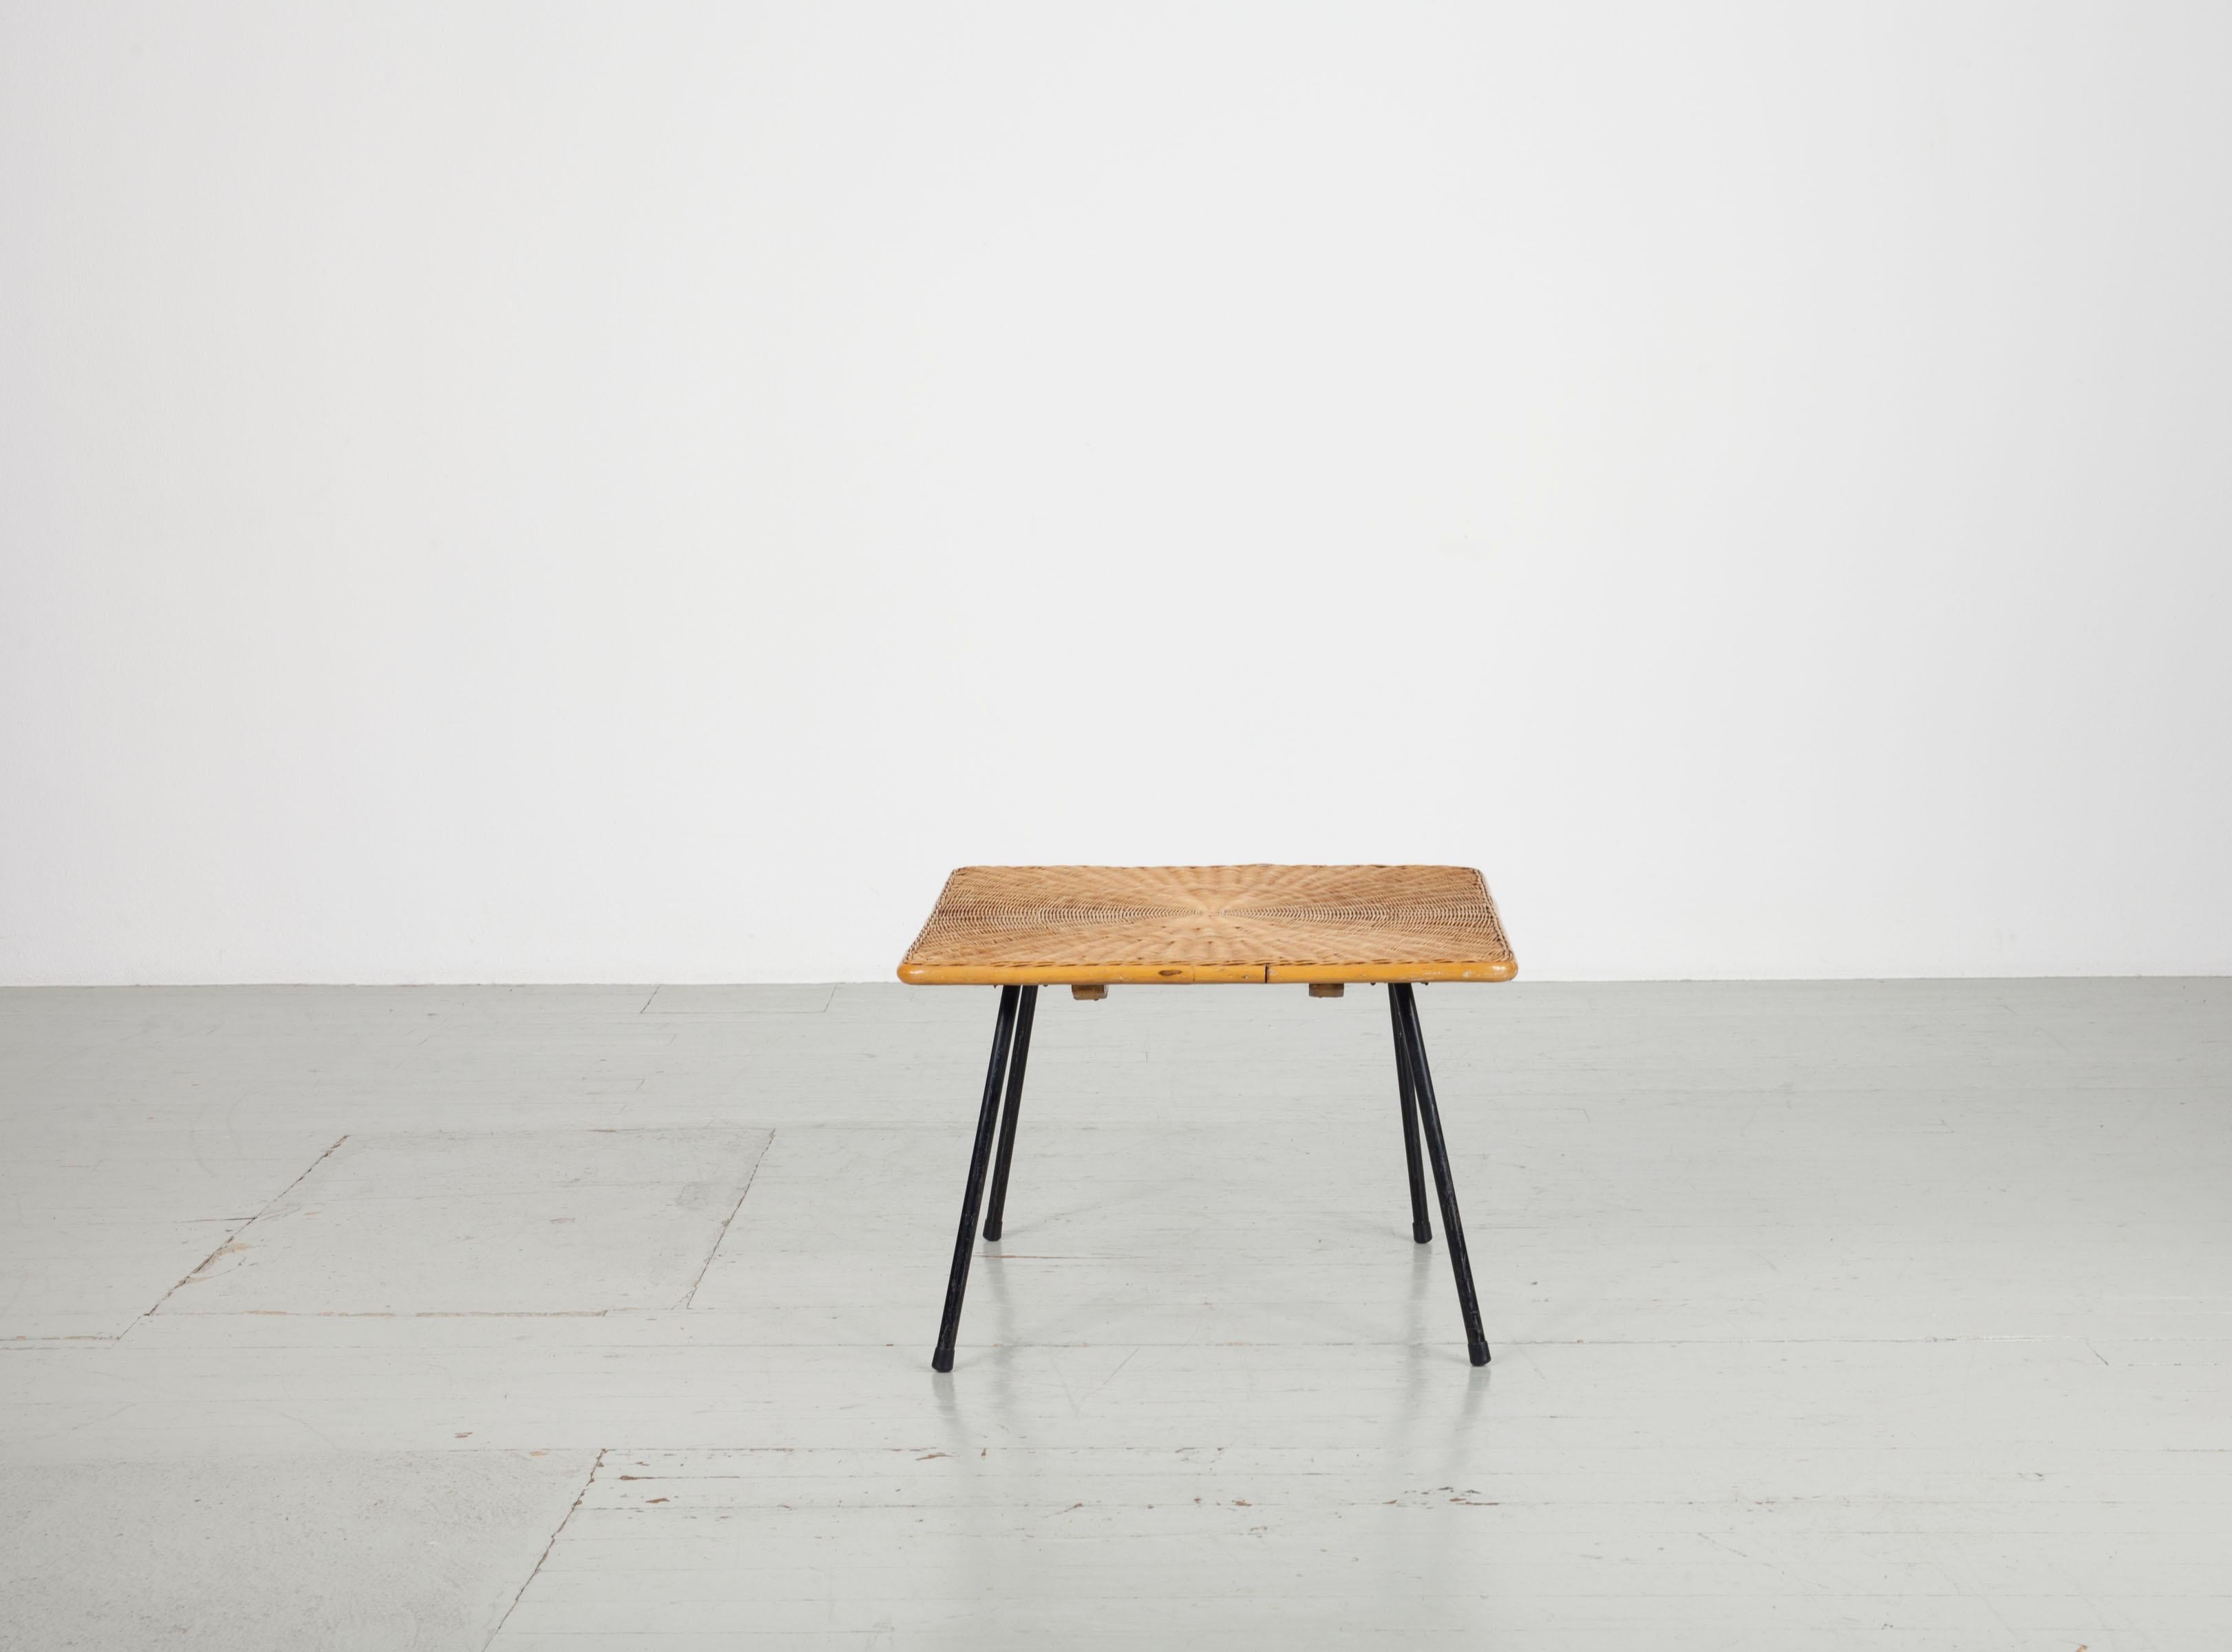 Quadratischer Sofatisch aus Korbgeflecht aus den 1950er Jahren mit 4 schwarz lackierten Metallbeinen. Das Flechtwerk liegt auf einer Holzkonstruktion und macht den Tisch sehr stabil. Die Umrandung ist aus Bambus gefertigt. Die Beine können